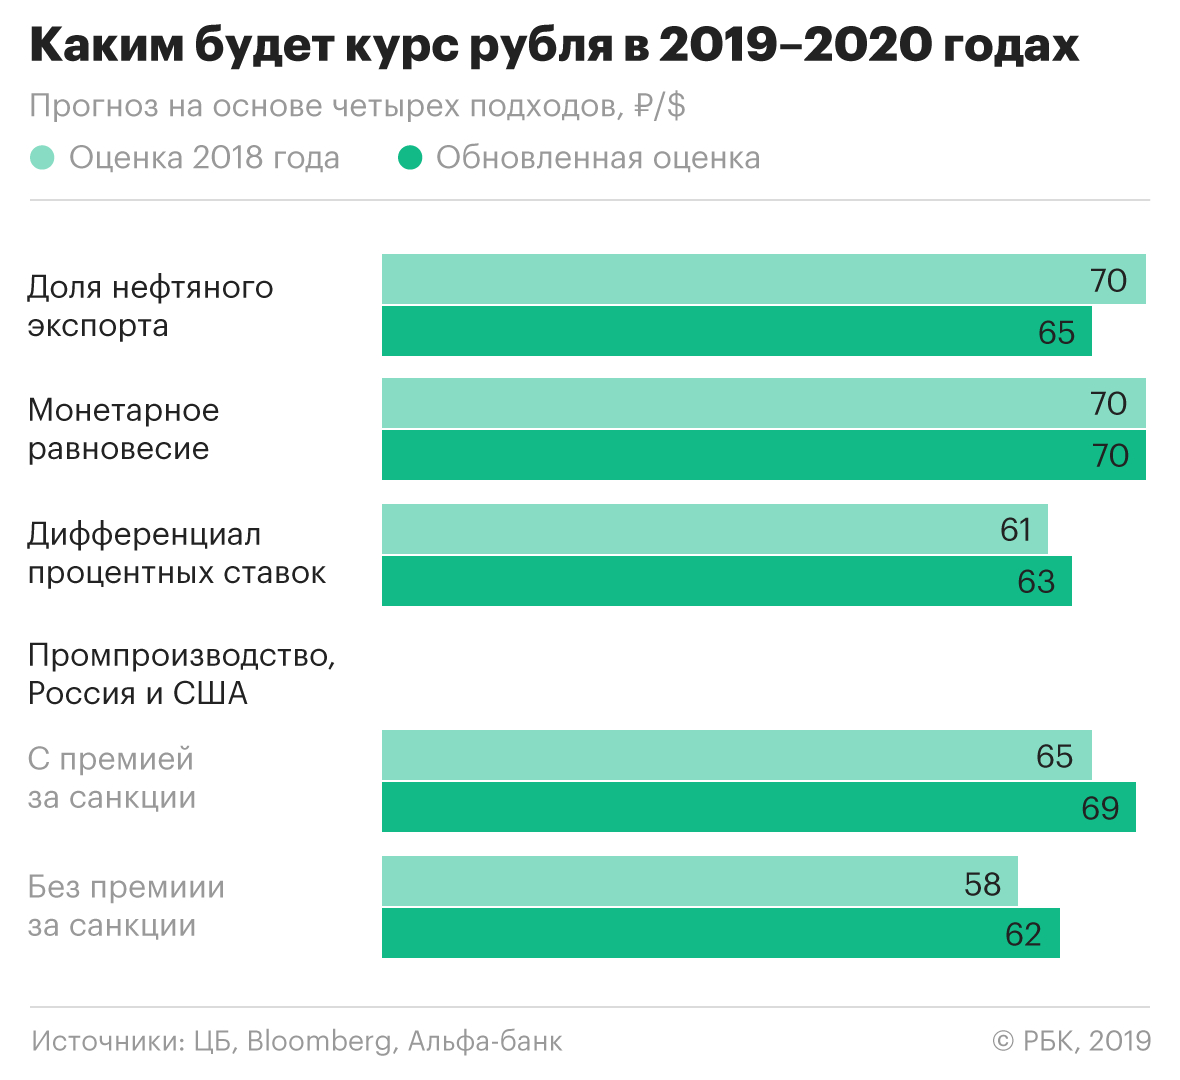 Прогноз лета 2018. Курс рубля в 2020 году. Курс рубля 2019 2020. Какой курс был в 2019 году. Курс рубля 2019.